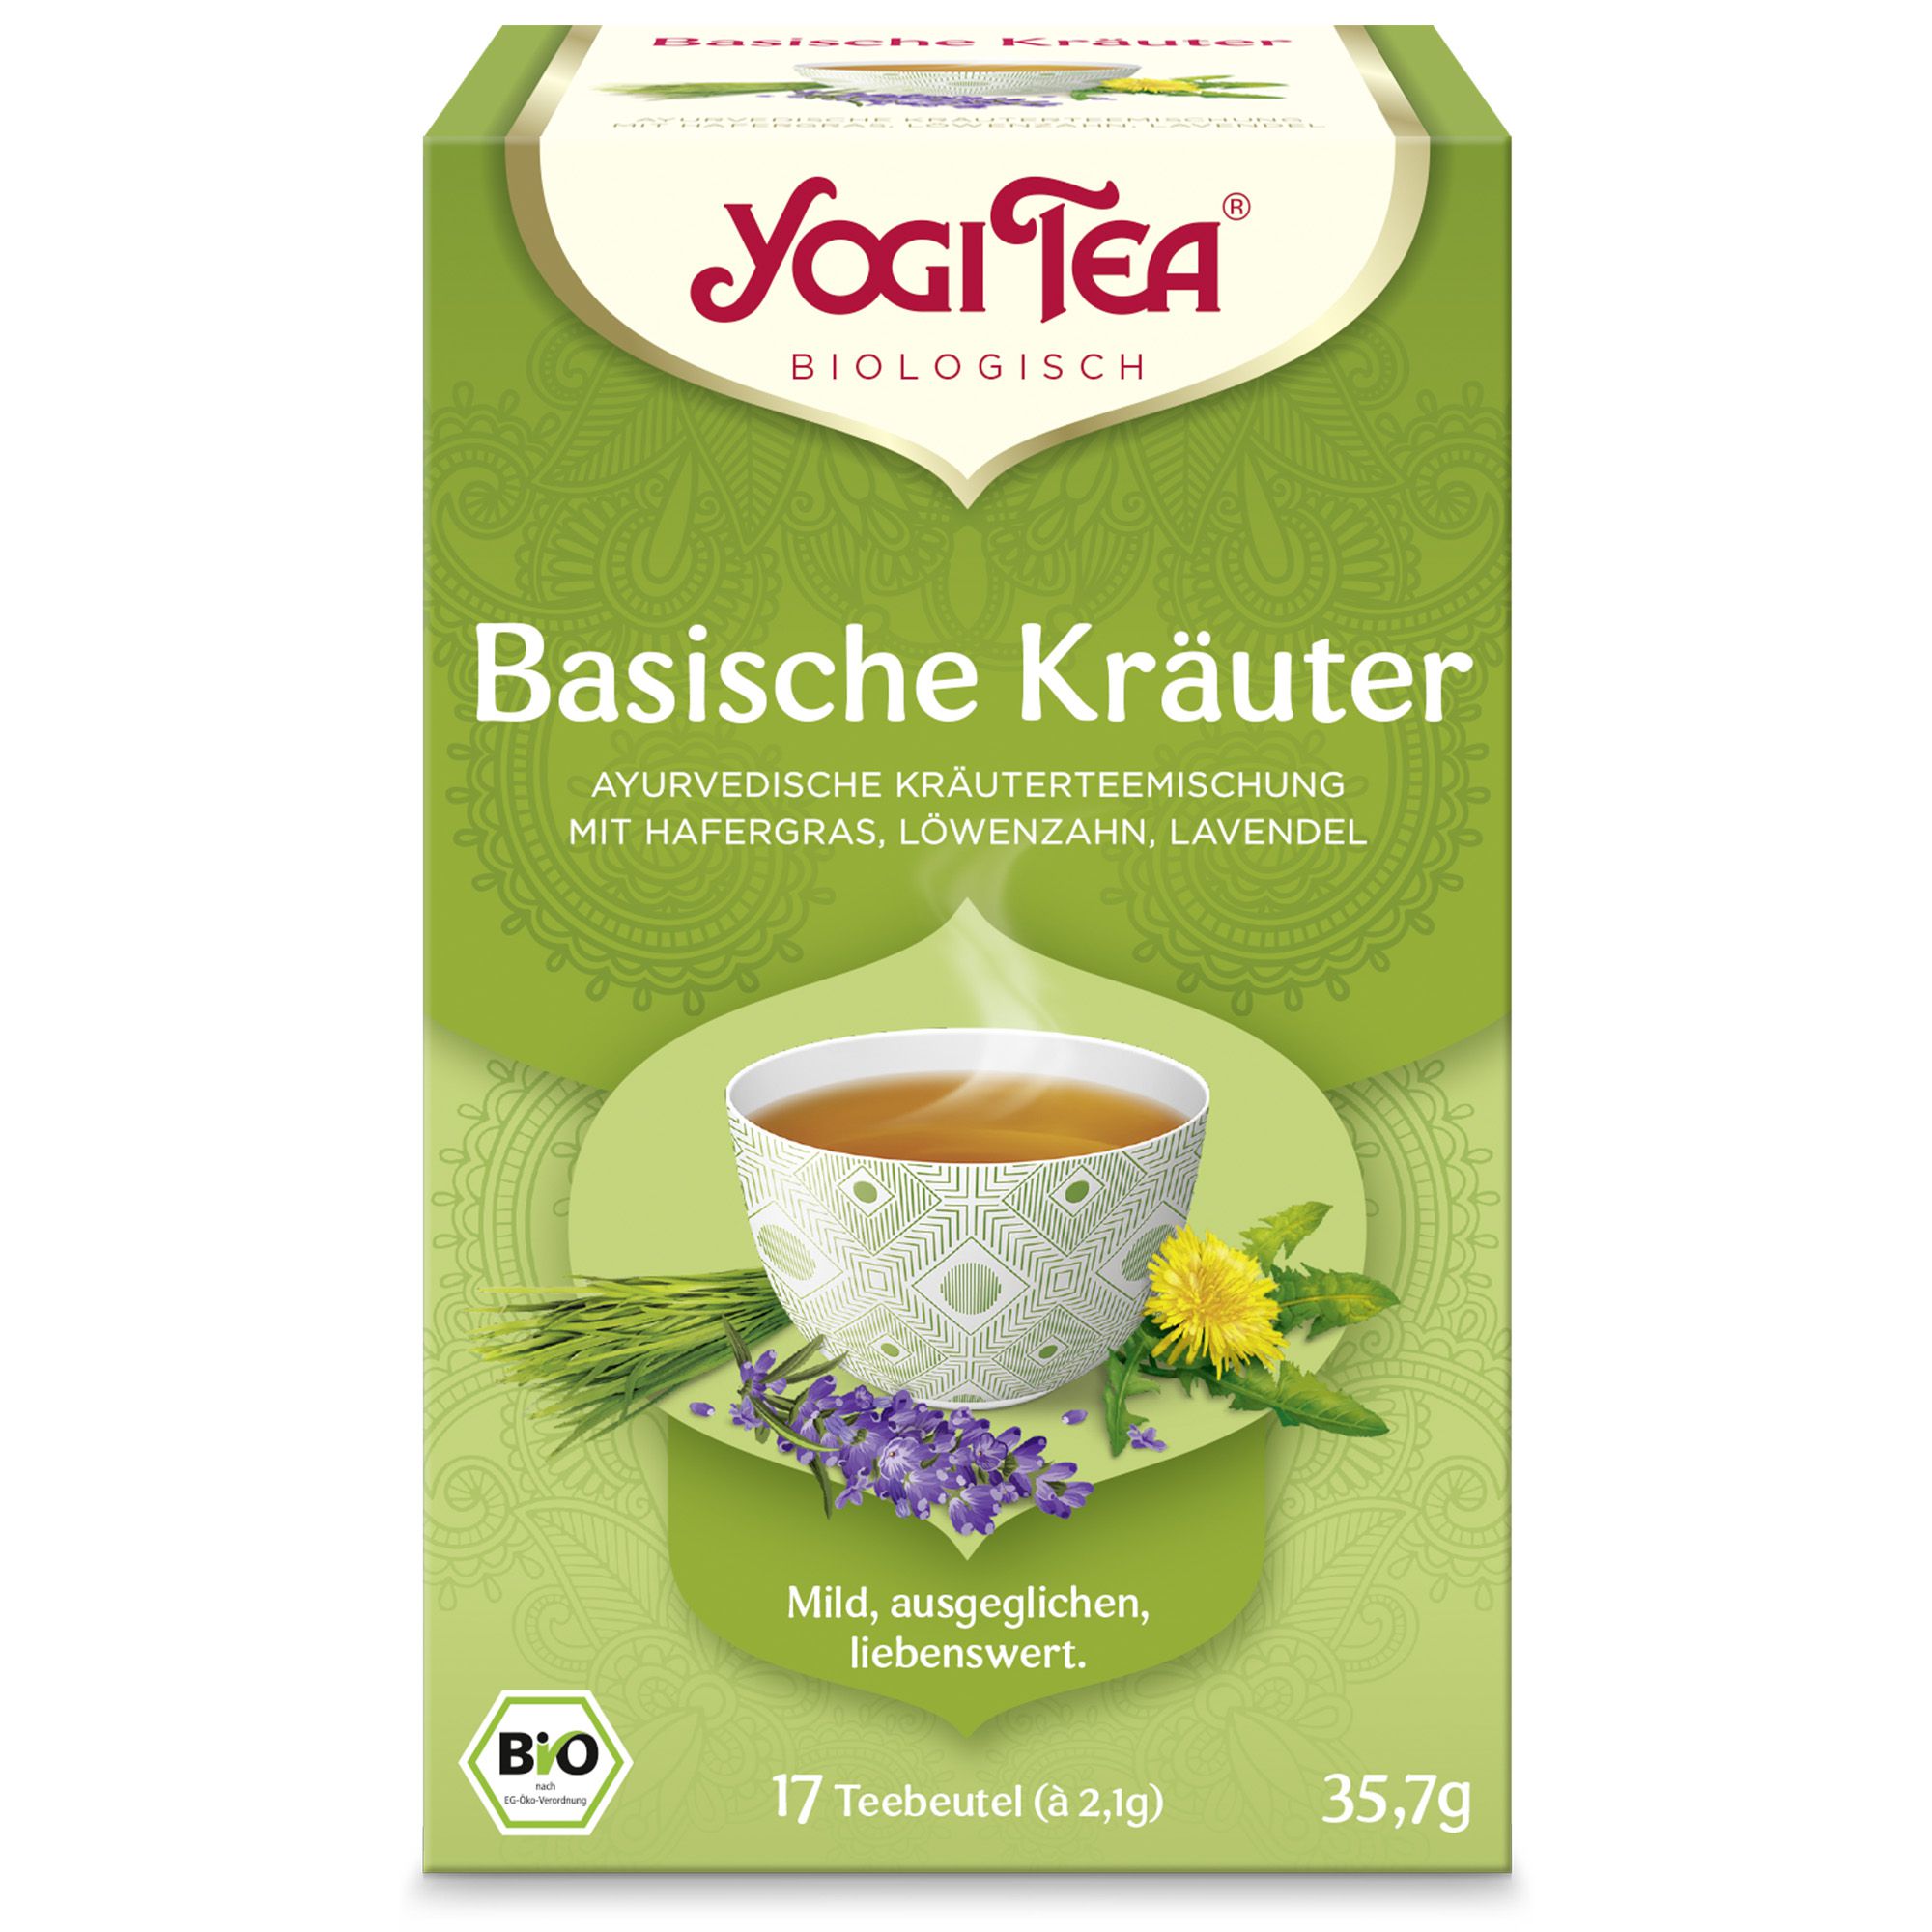 YOGI TEA Basische Kräuter Filterbeutel